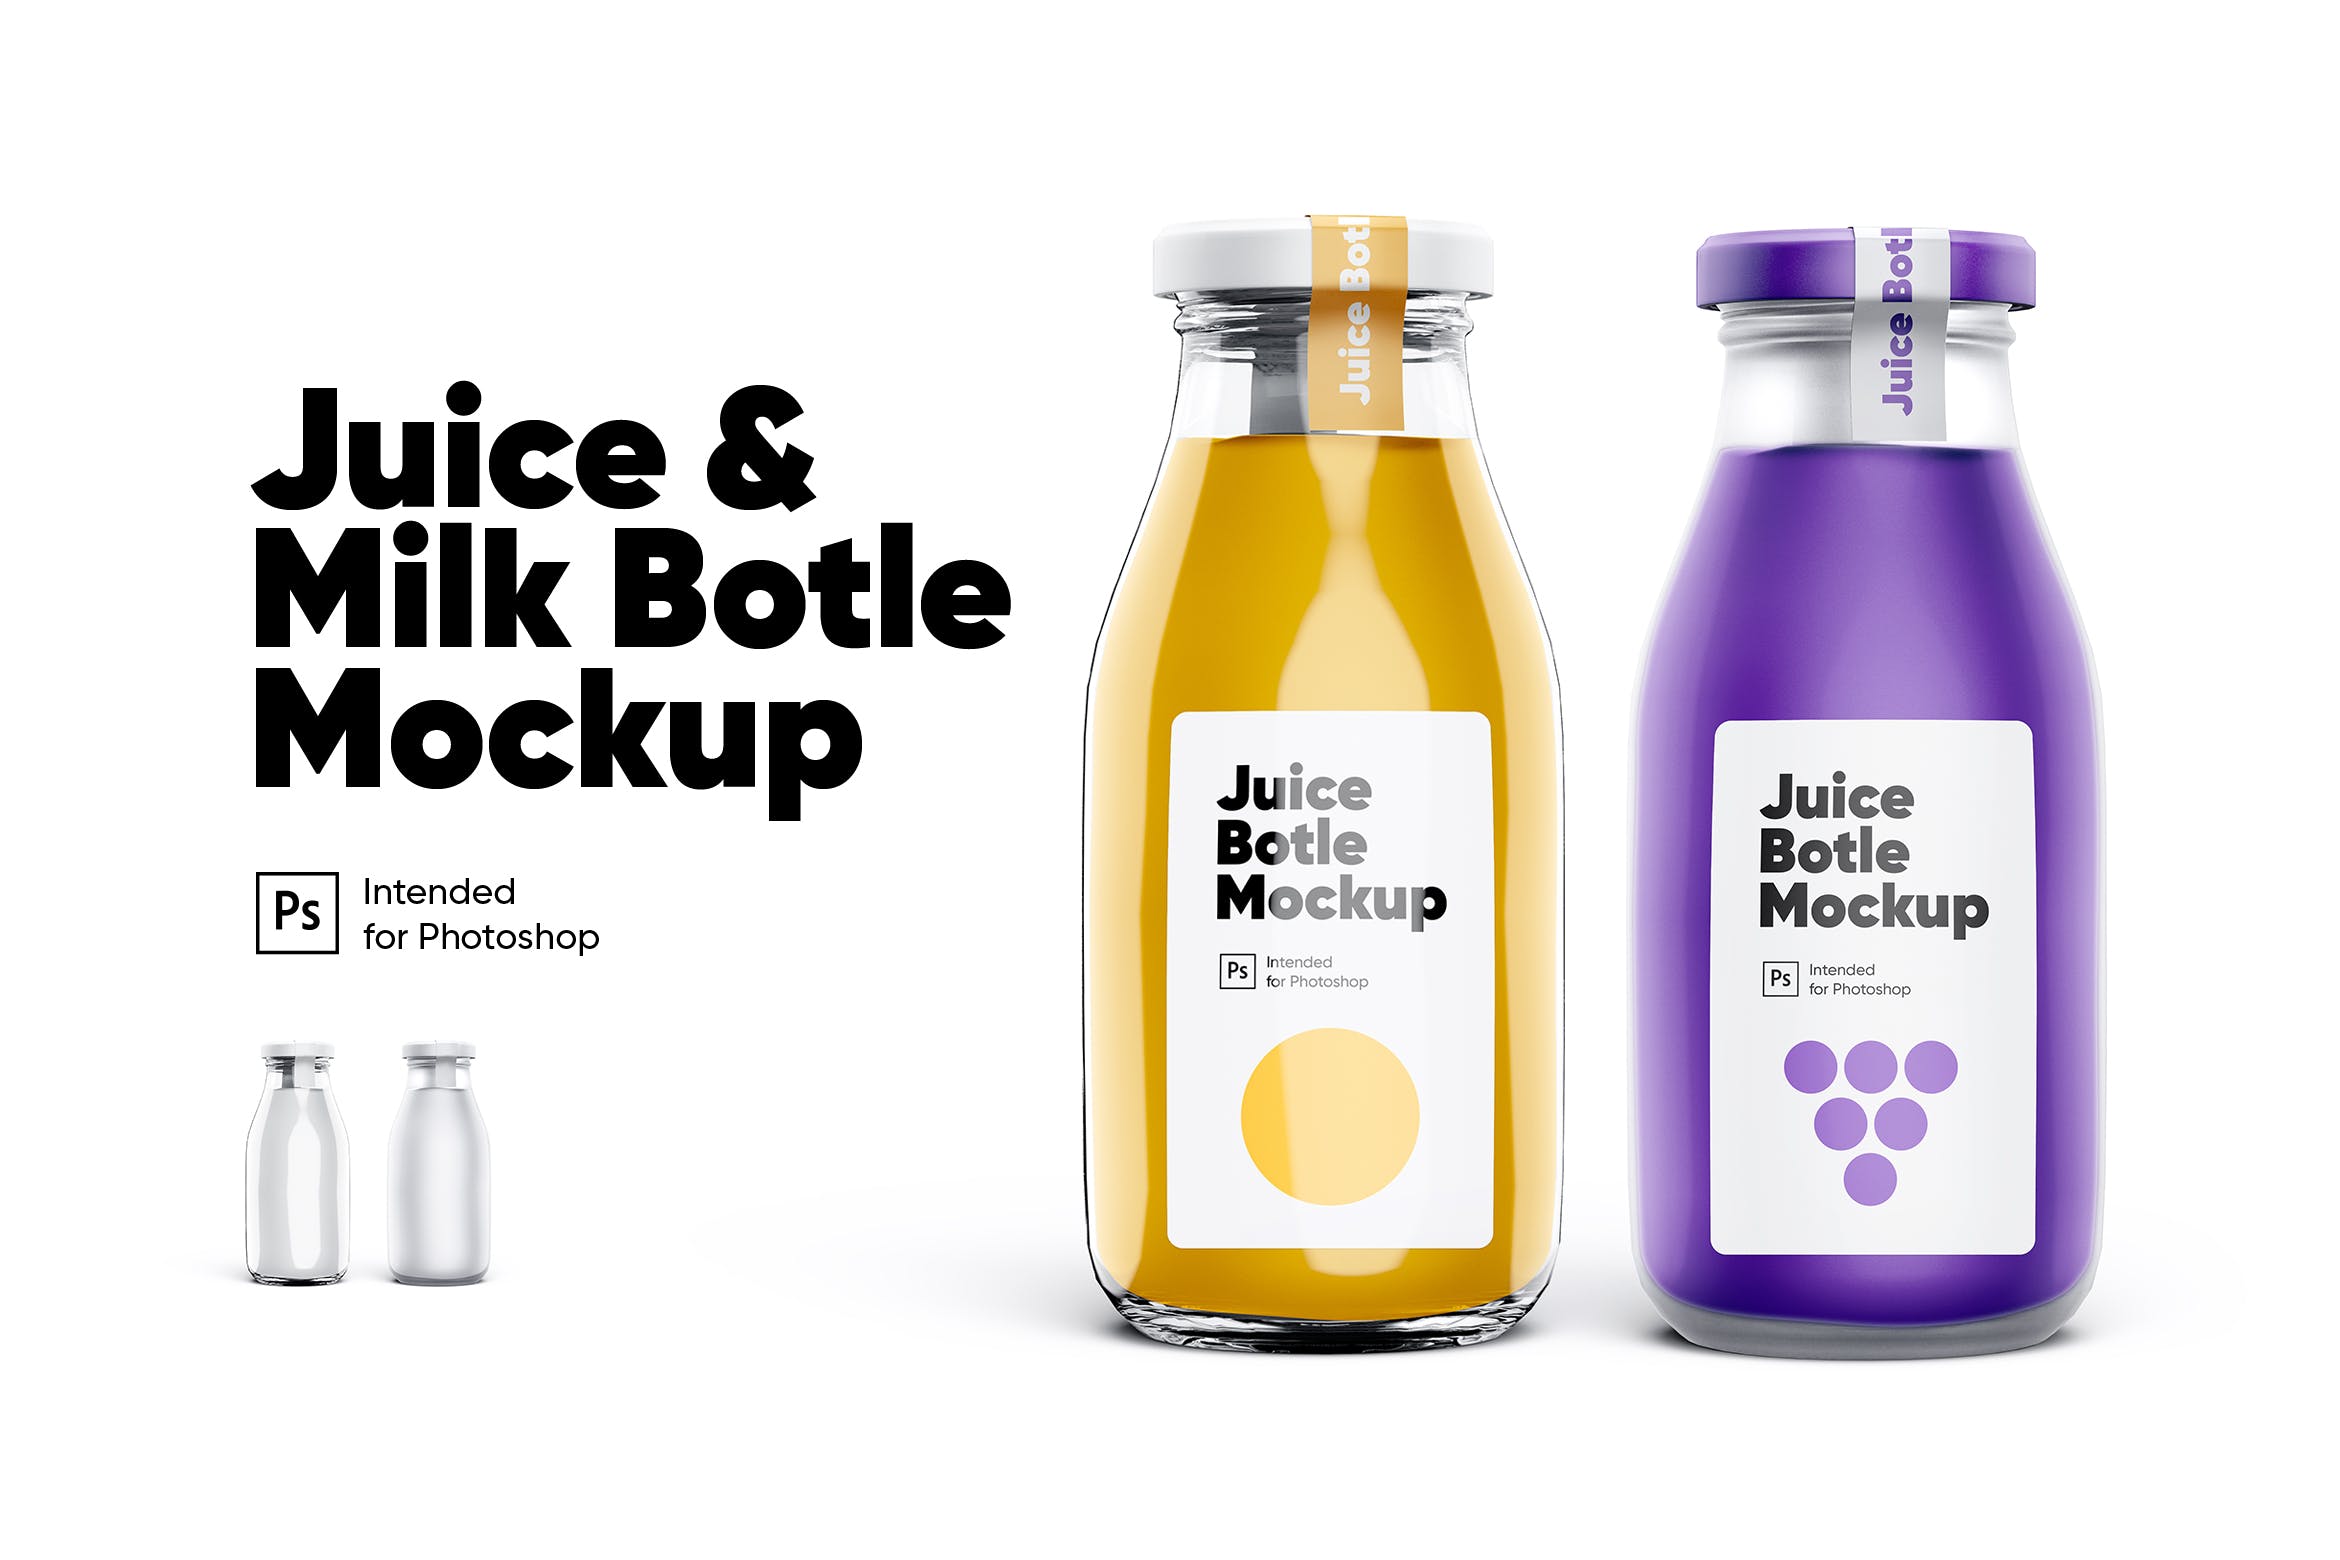 牛奶瓶&果汁包装设计样机套装 Juice & Milk Bottles Mockup Set设计素材模板